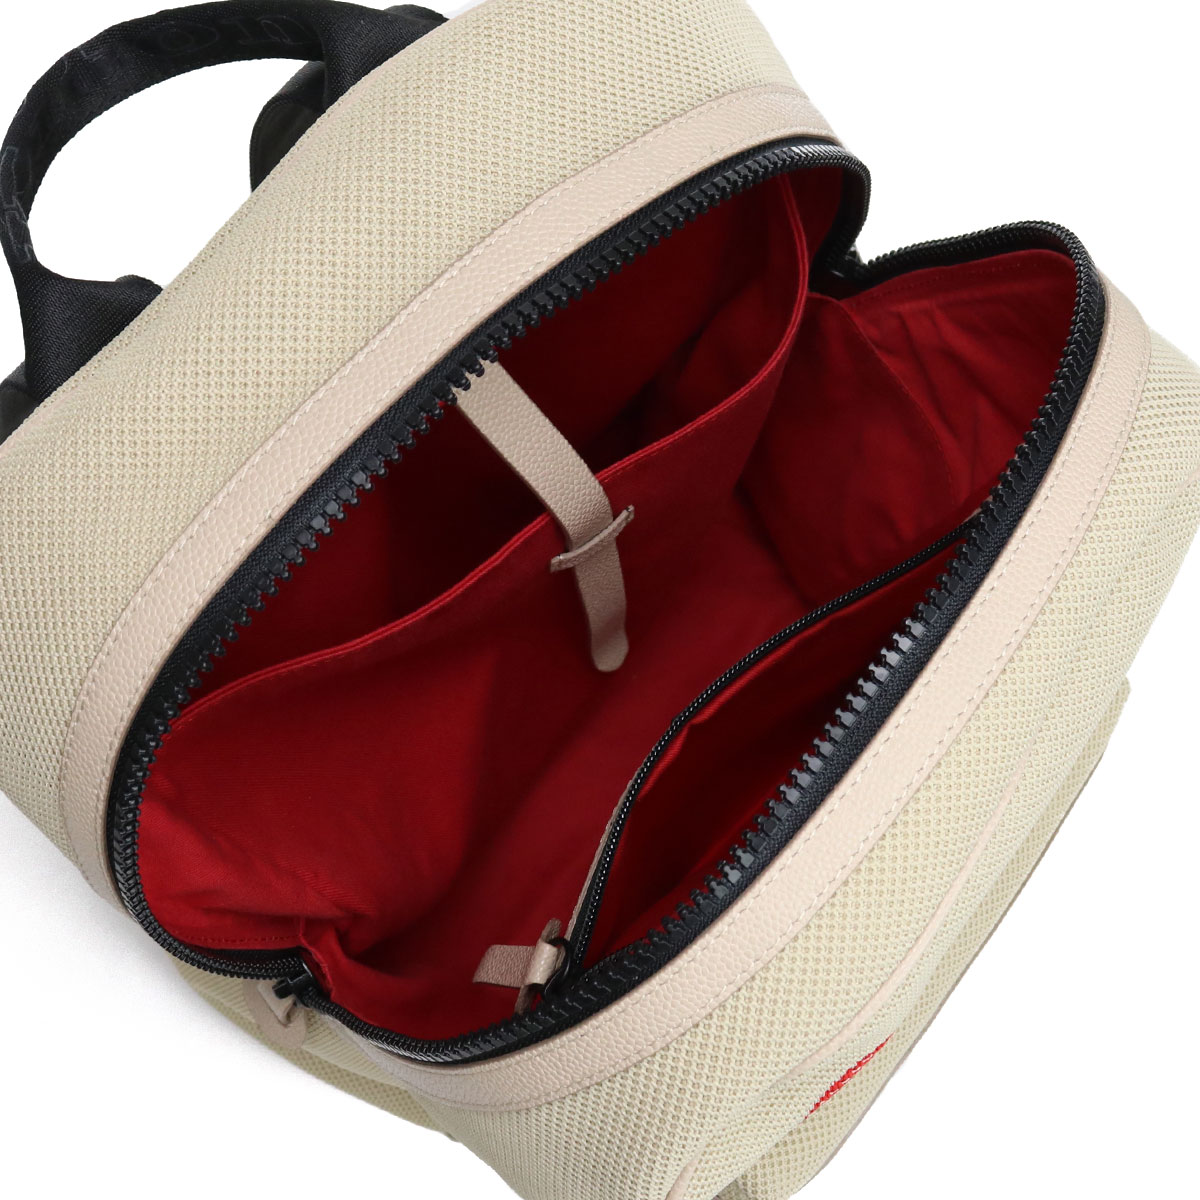 キートン Kiton BEIGE N00820-12 UBFITK bag-01 luxu-01 バックパック ブランド ベージュ系 リュック